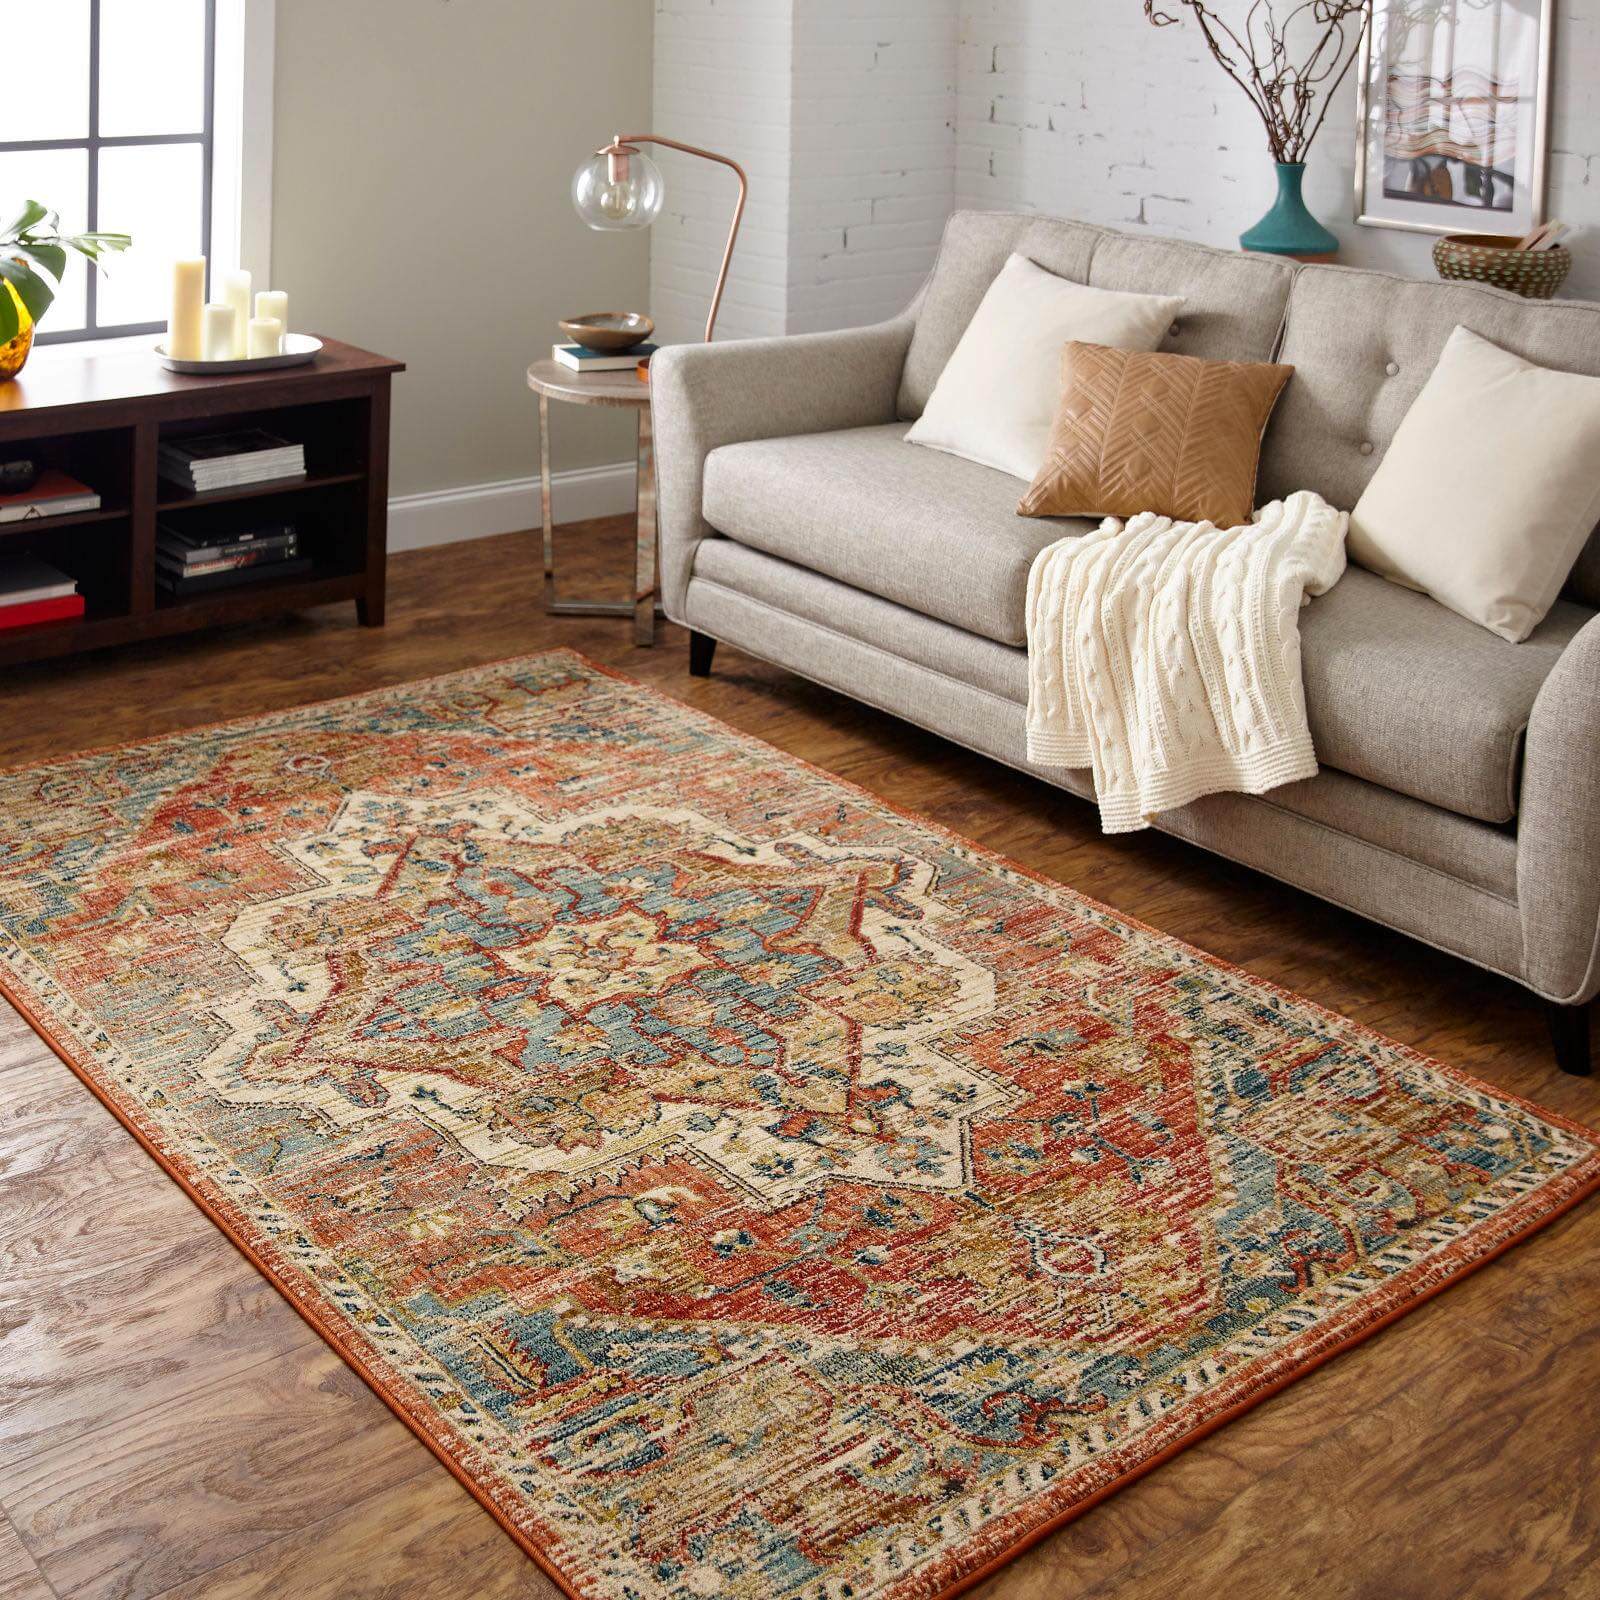 Living room Area Rug | The FloorWorks | Bethlehem, NH